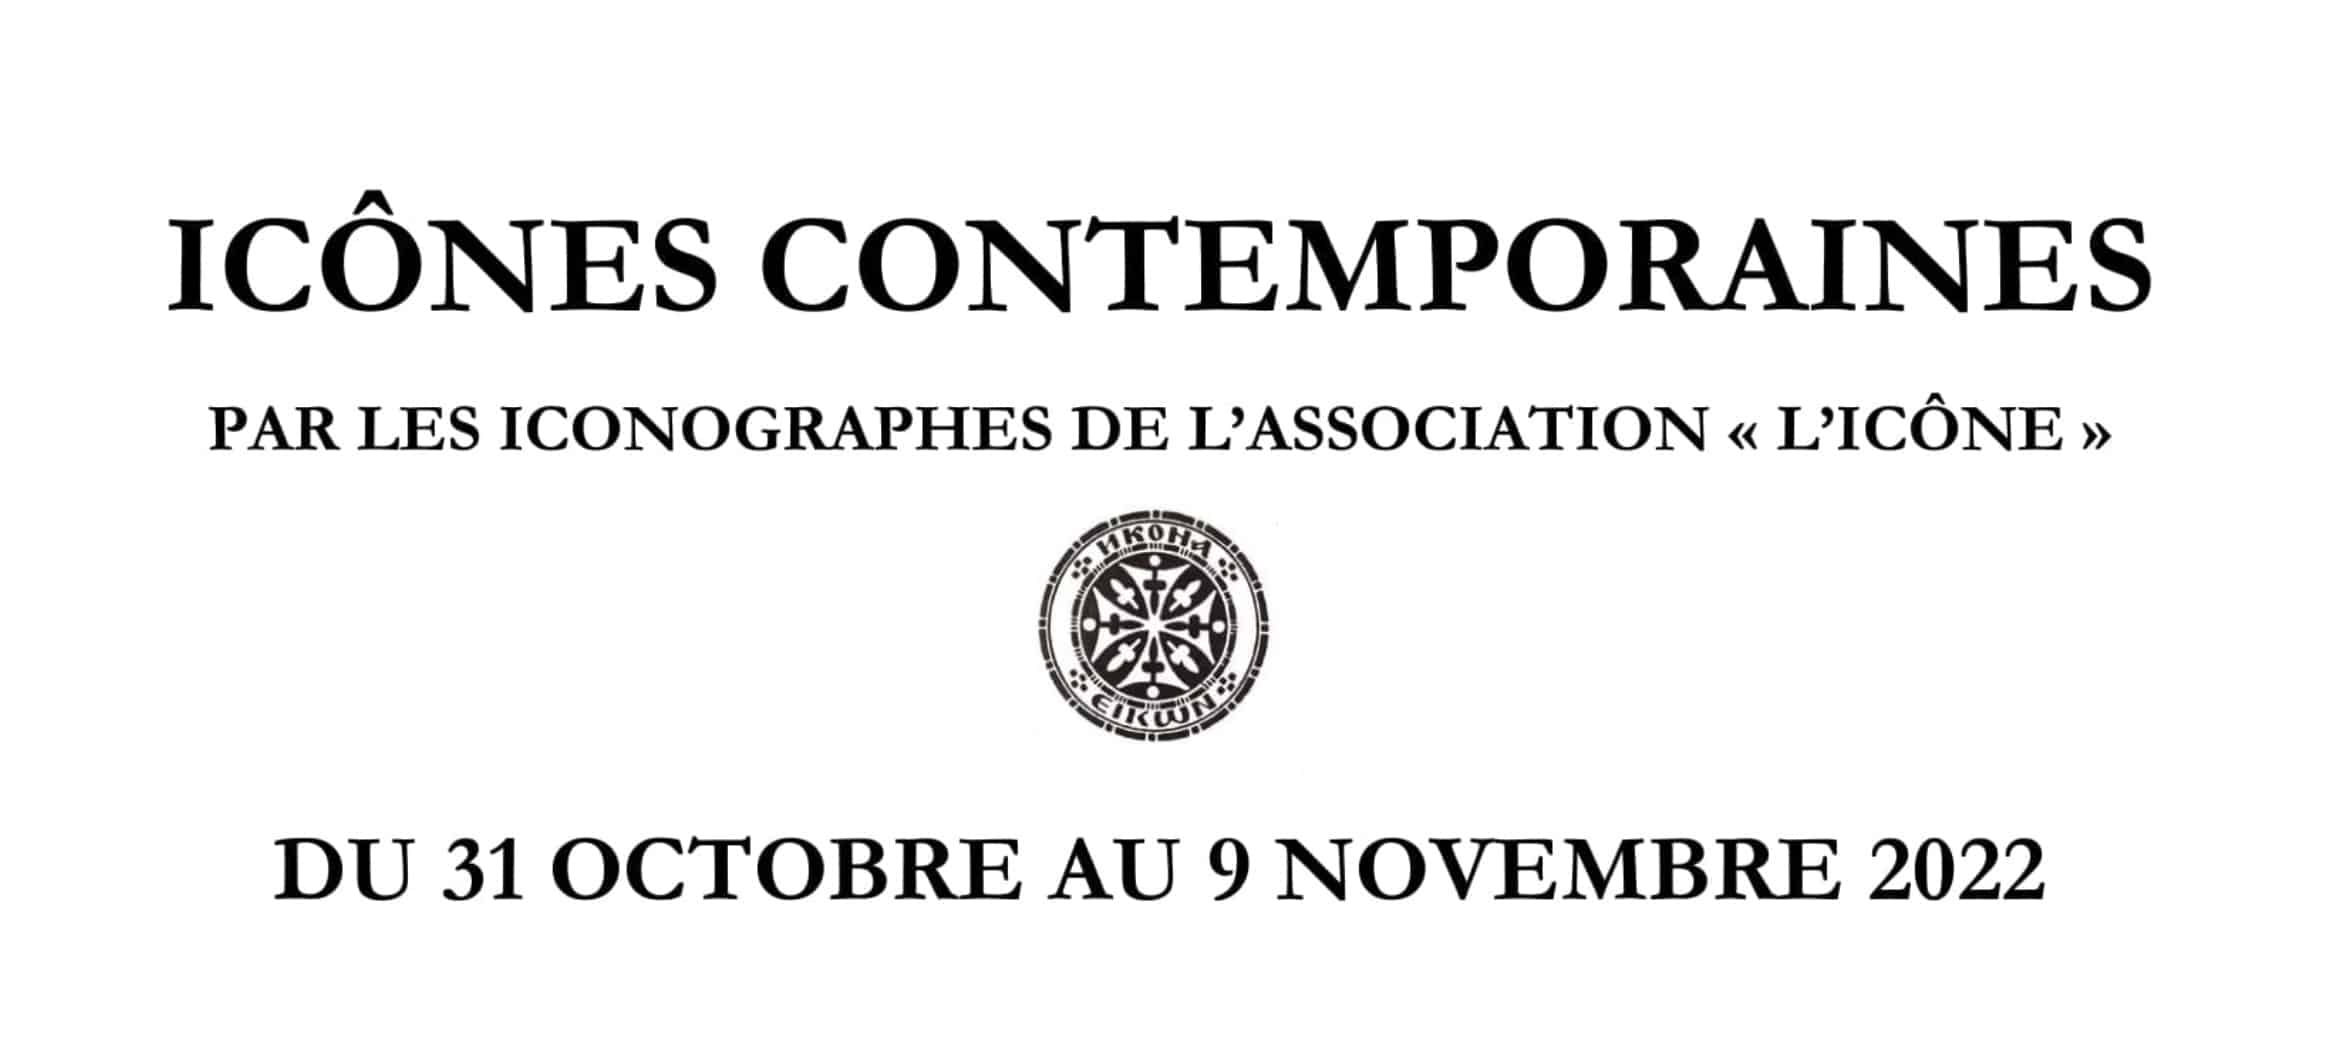 ￼Exposition « Icônes contemporaines » du 31 octobre au 9 novembre 2022 à Paris